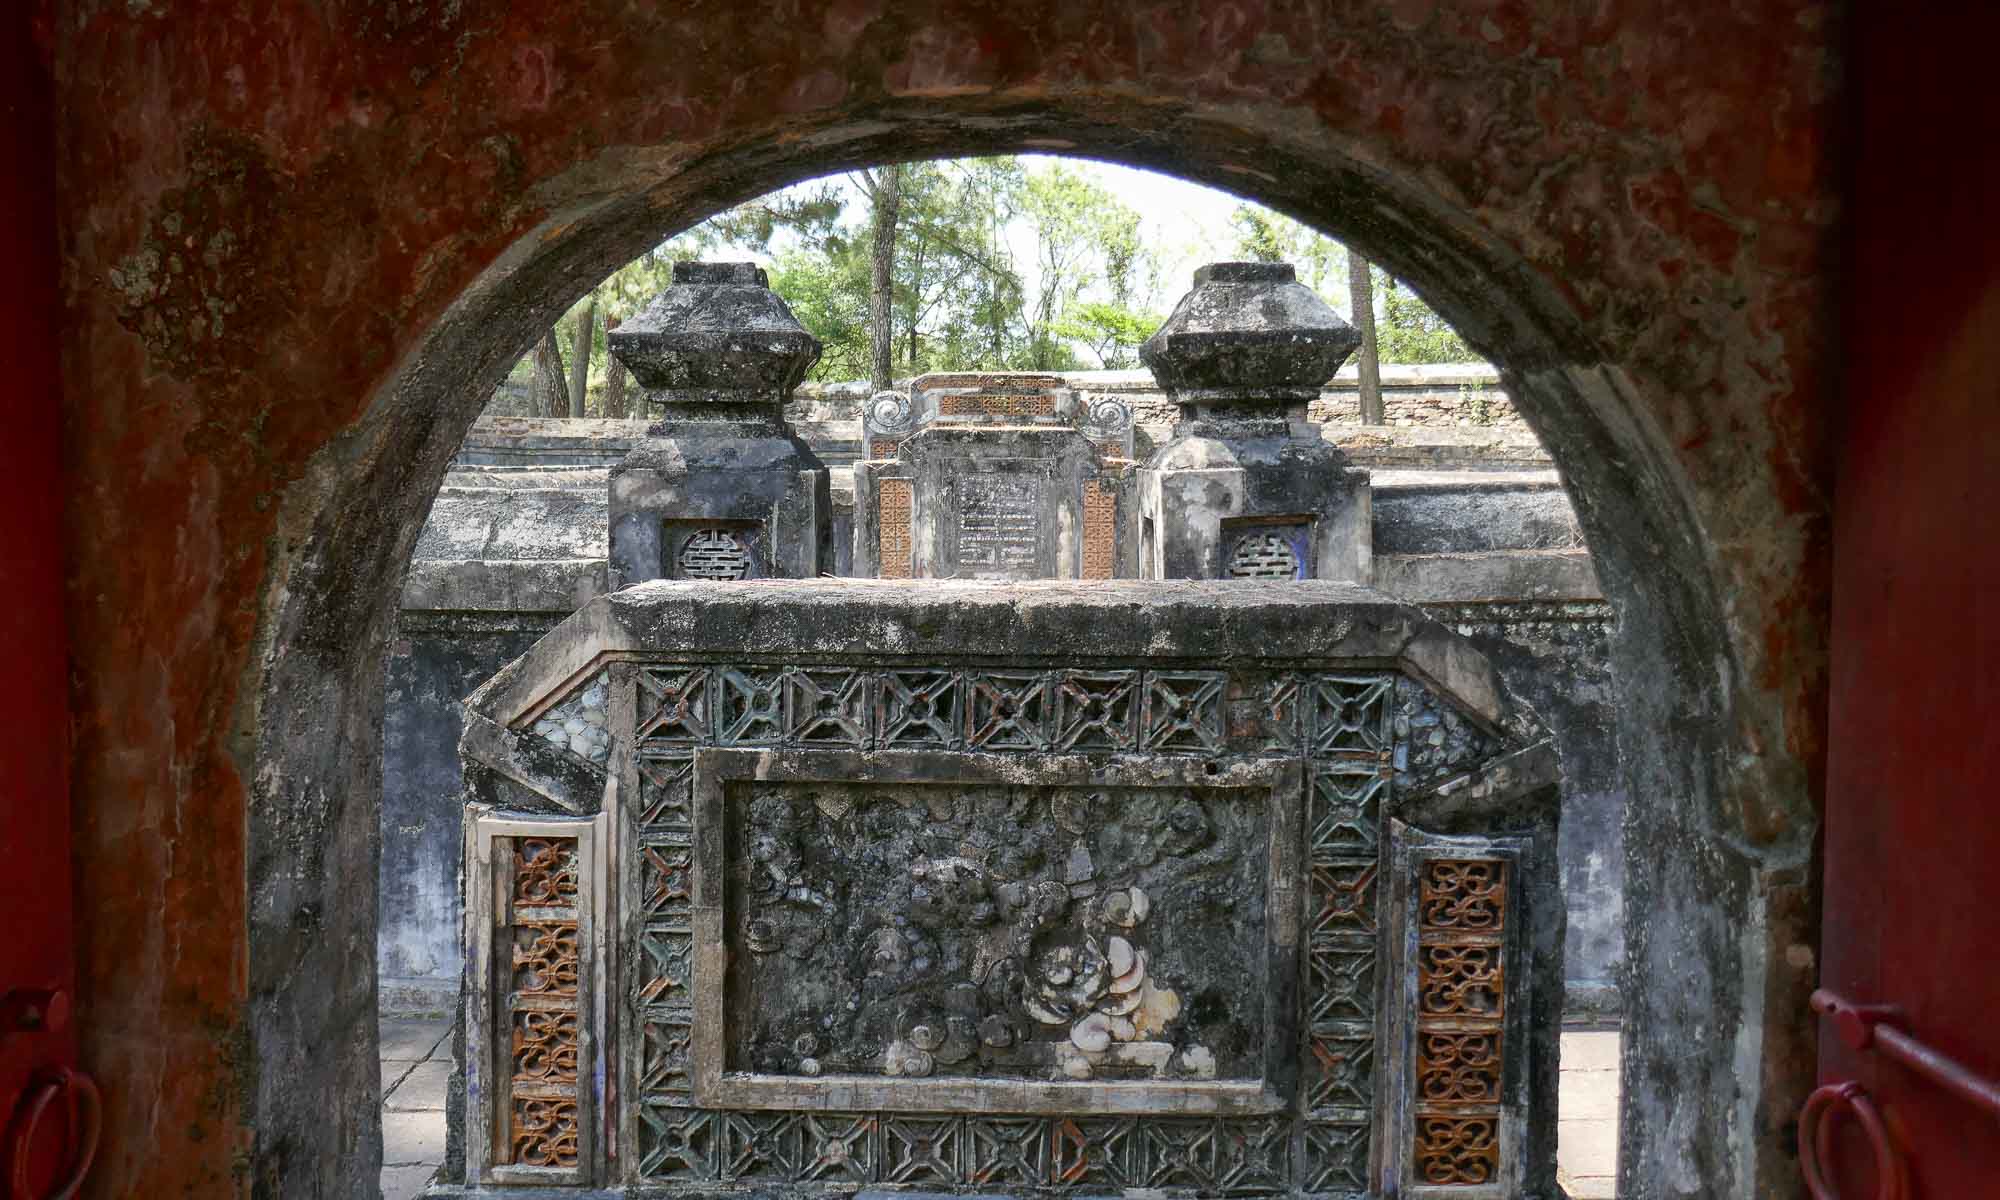 Emperor Kien Phuc's (son of Tu Duc) final resting place